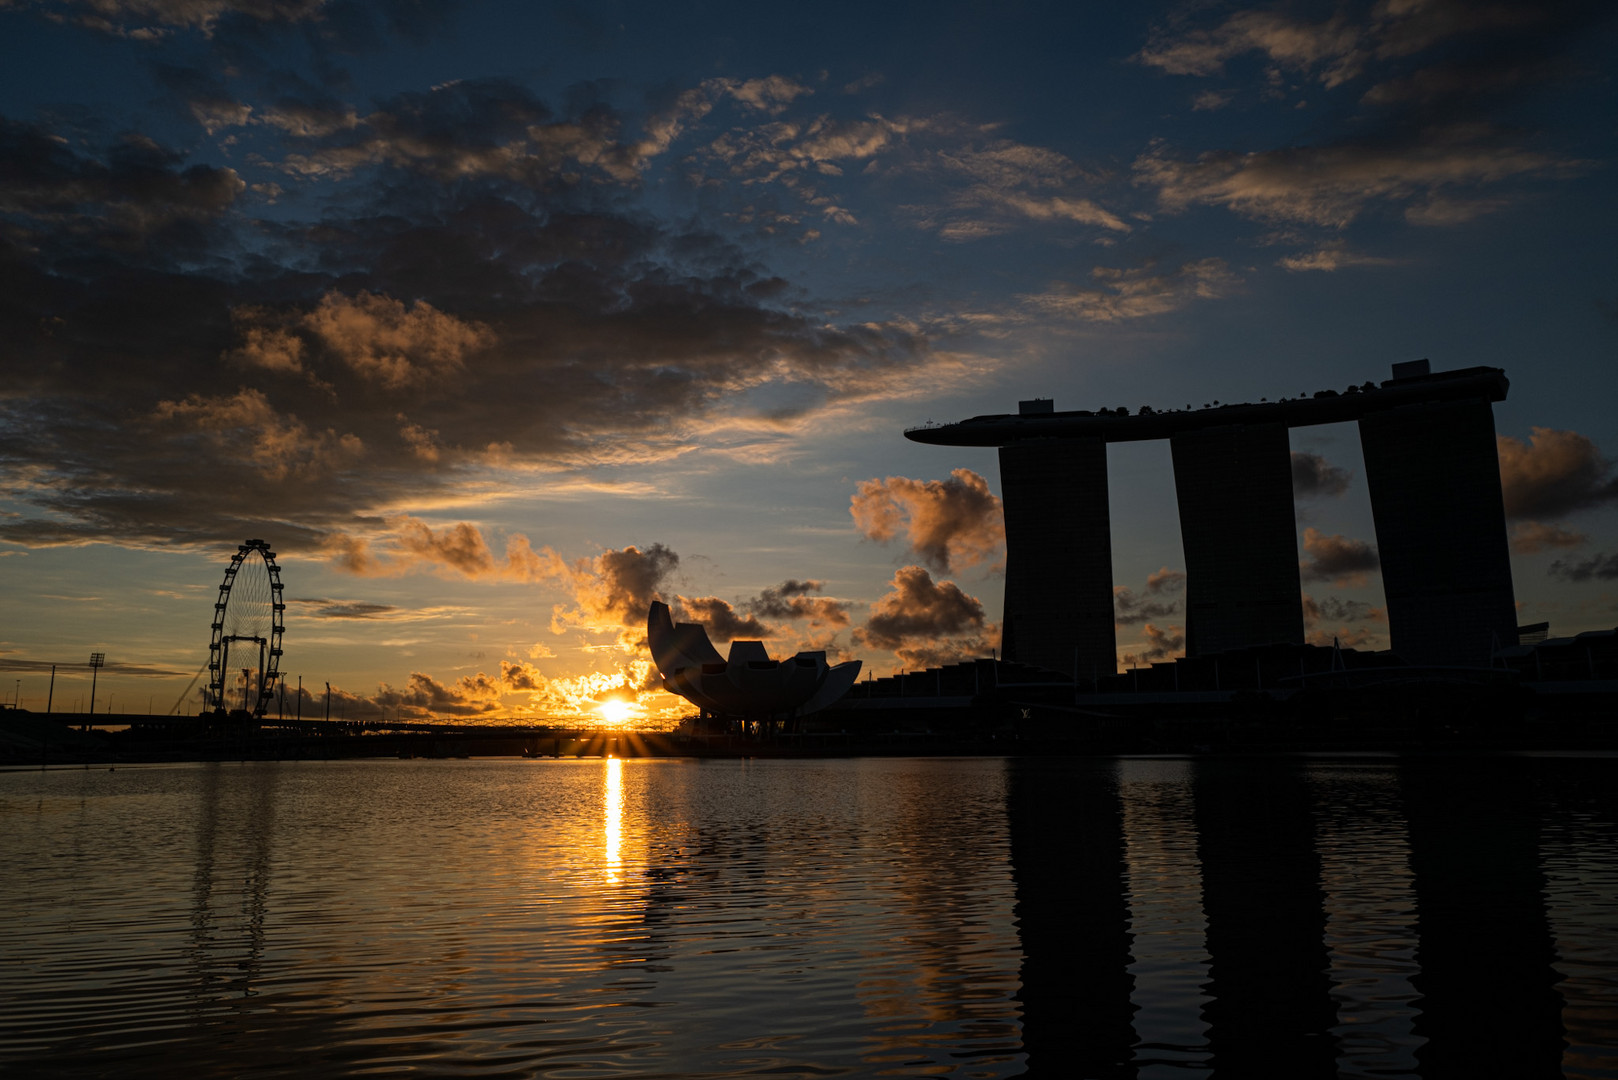 Dawn at Marina Bay